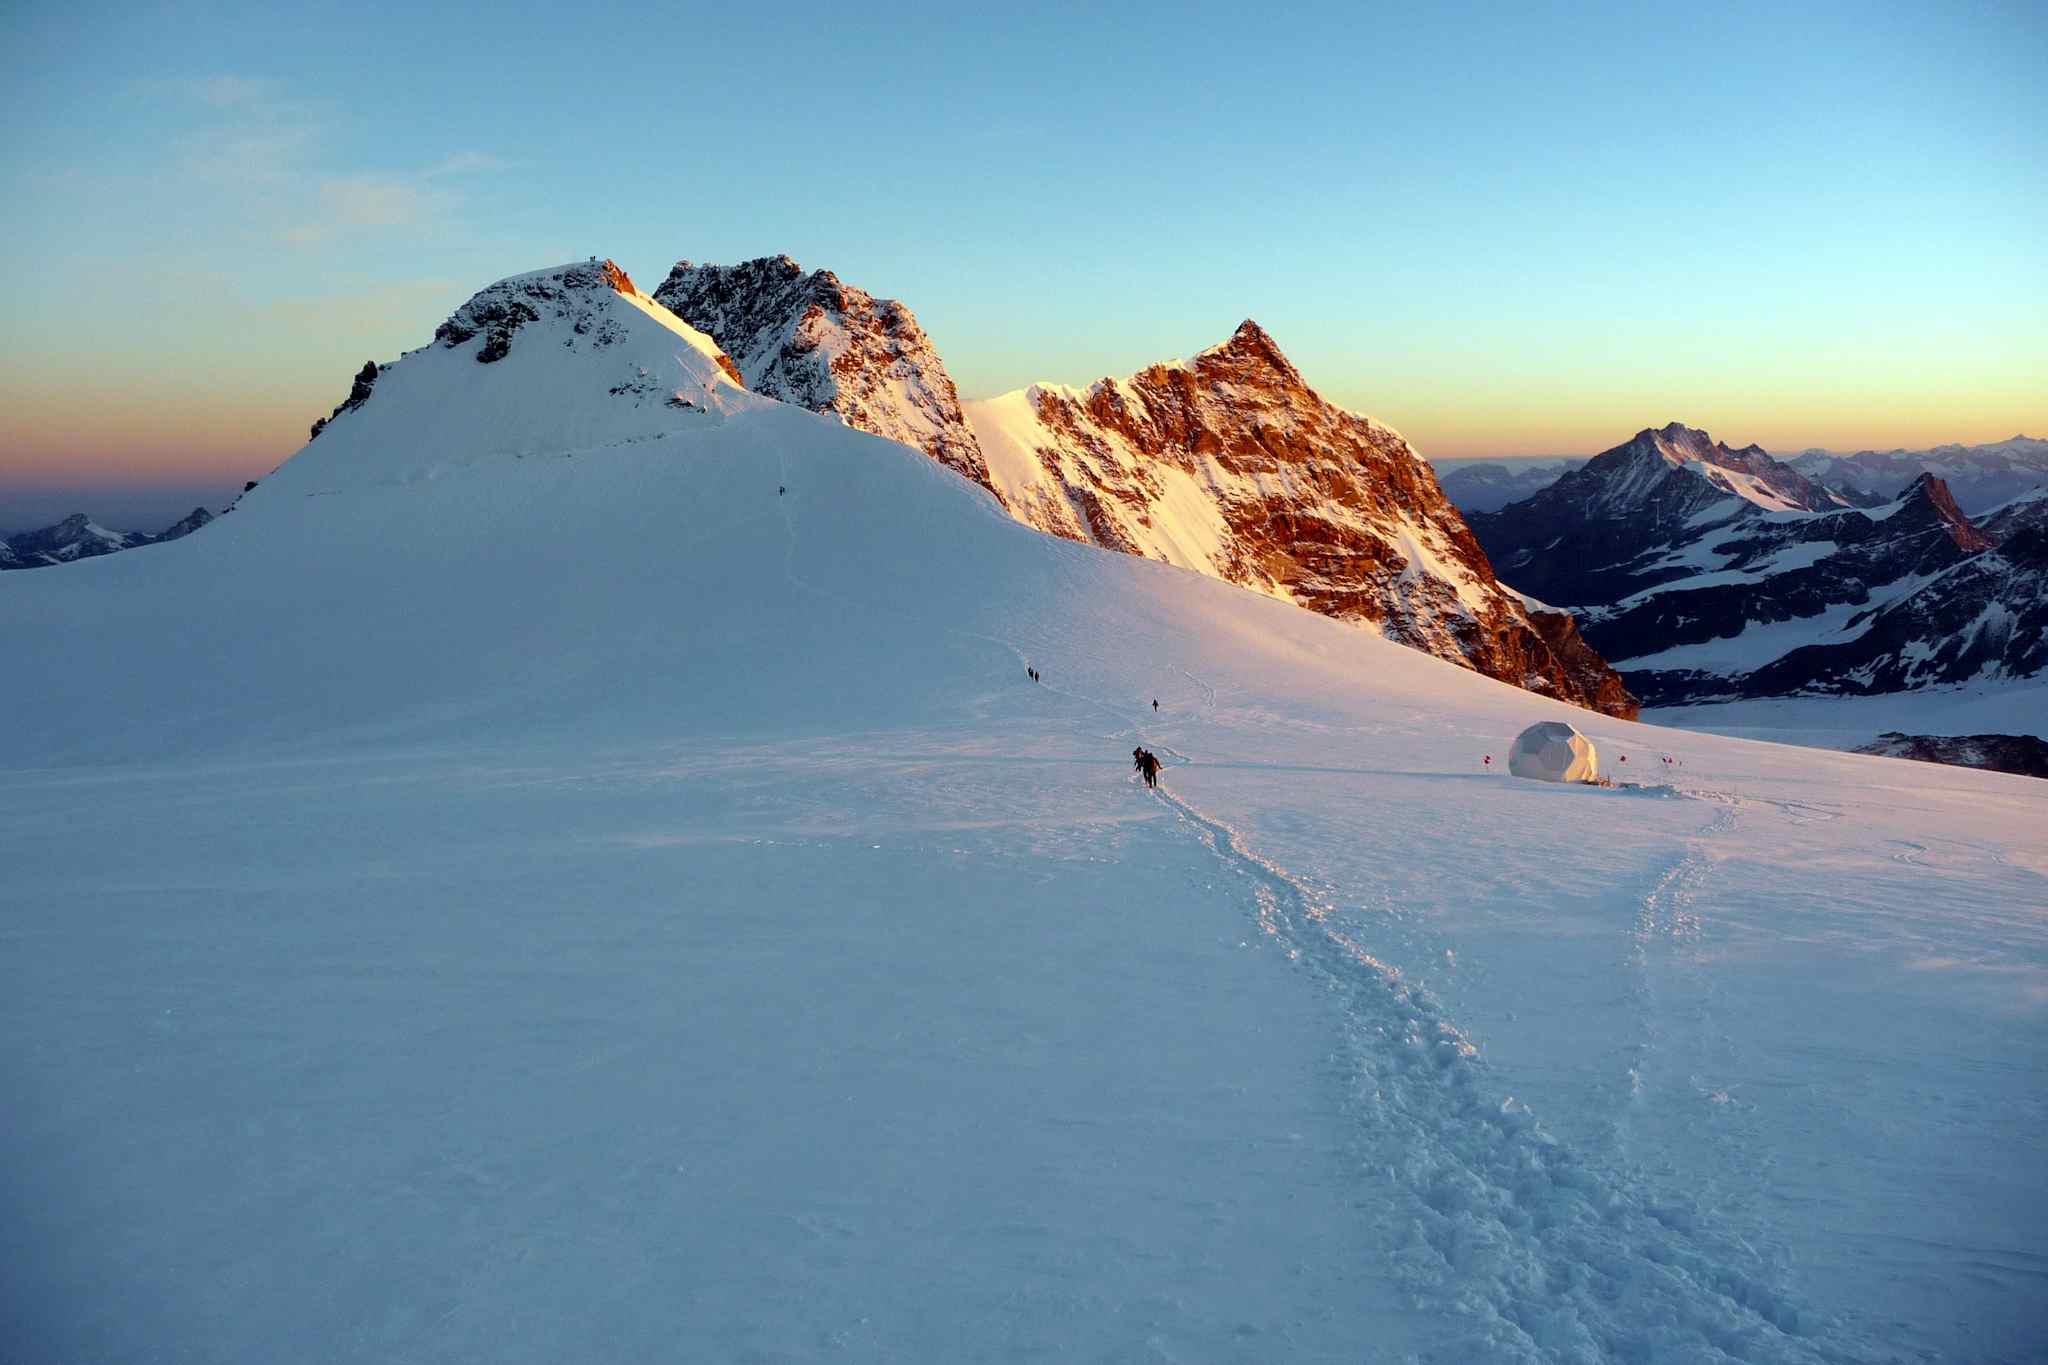 Monte Rosa summit, Italy
Host image: Altai